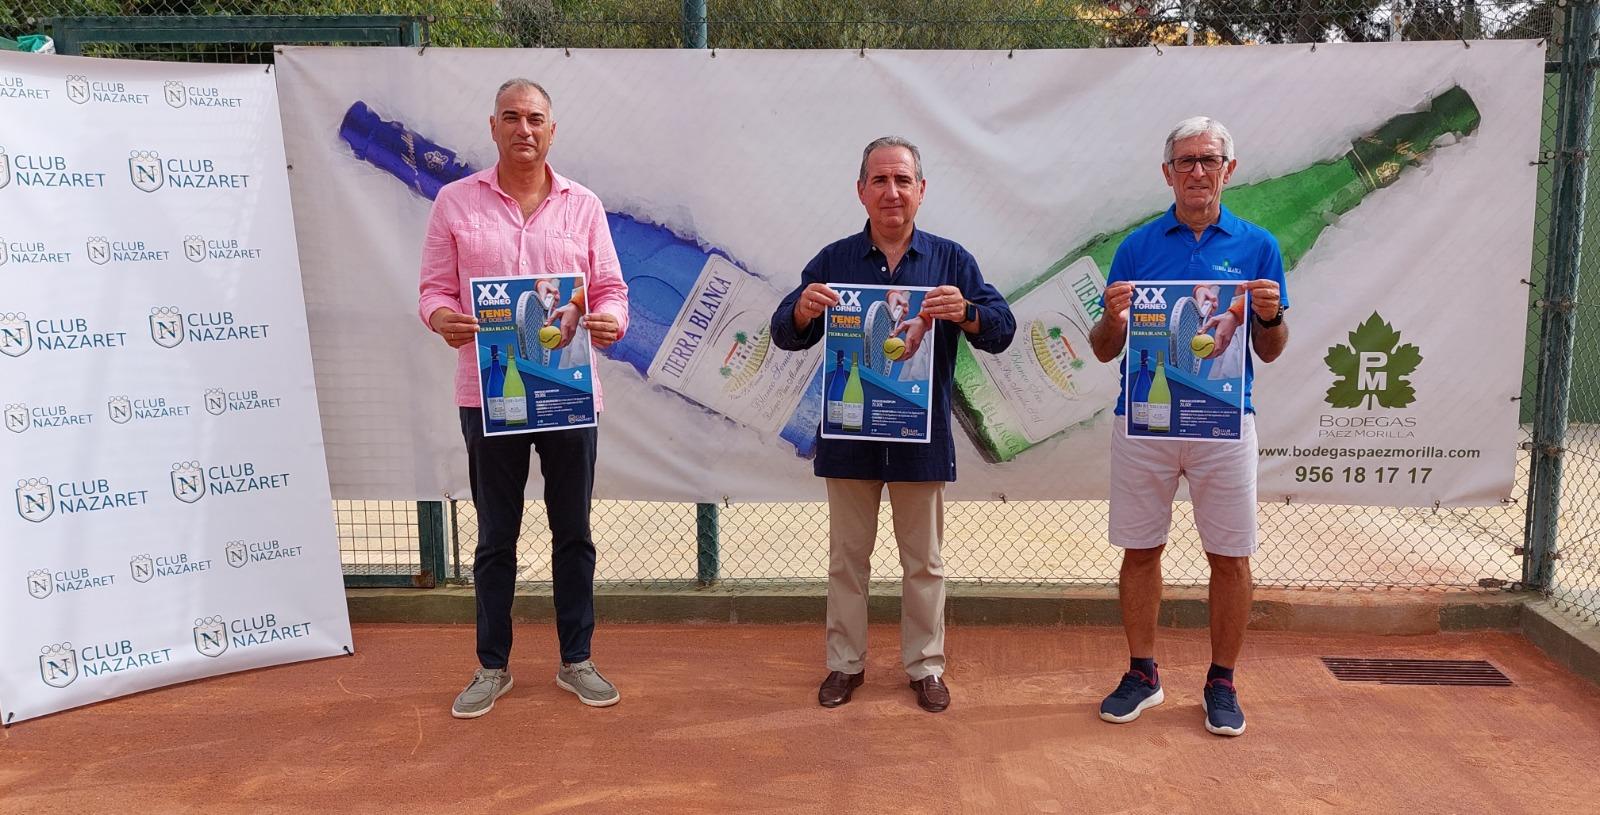 Presentado el XX Torneo Tierra Blanca de tenis dobles que se disputará en el Club Nazaret de Jerez